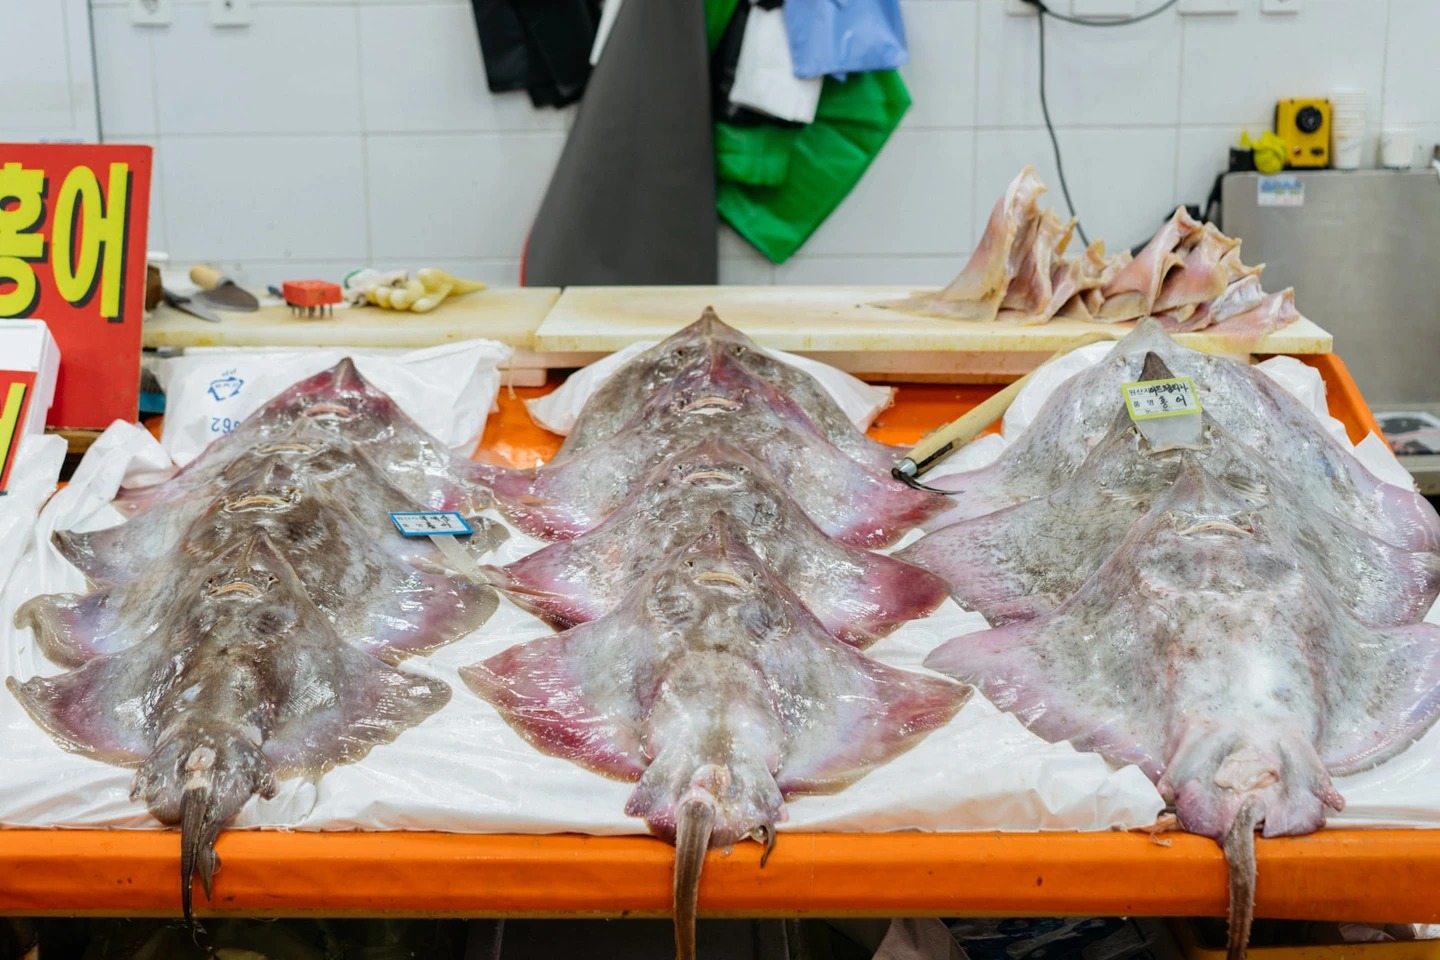 Cô gái Việt kể chuyện đi chợ hải sản tươi sống nổi tiếng Hàn Quốc: Có thể ăn ngay tại chợ luôn, 4 triệu đồng một bữa không gọi là đắt - Ảnh 7.